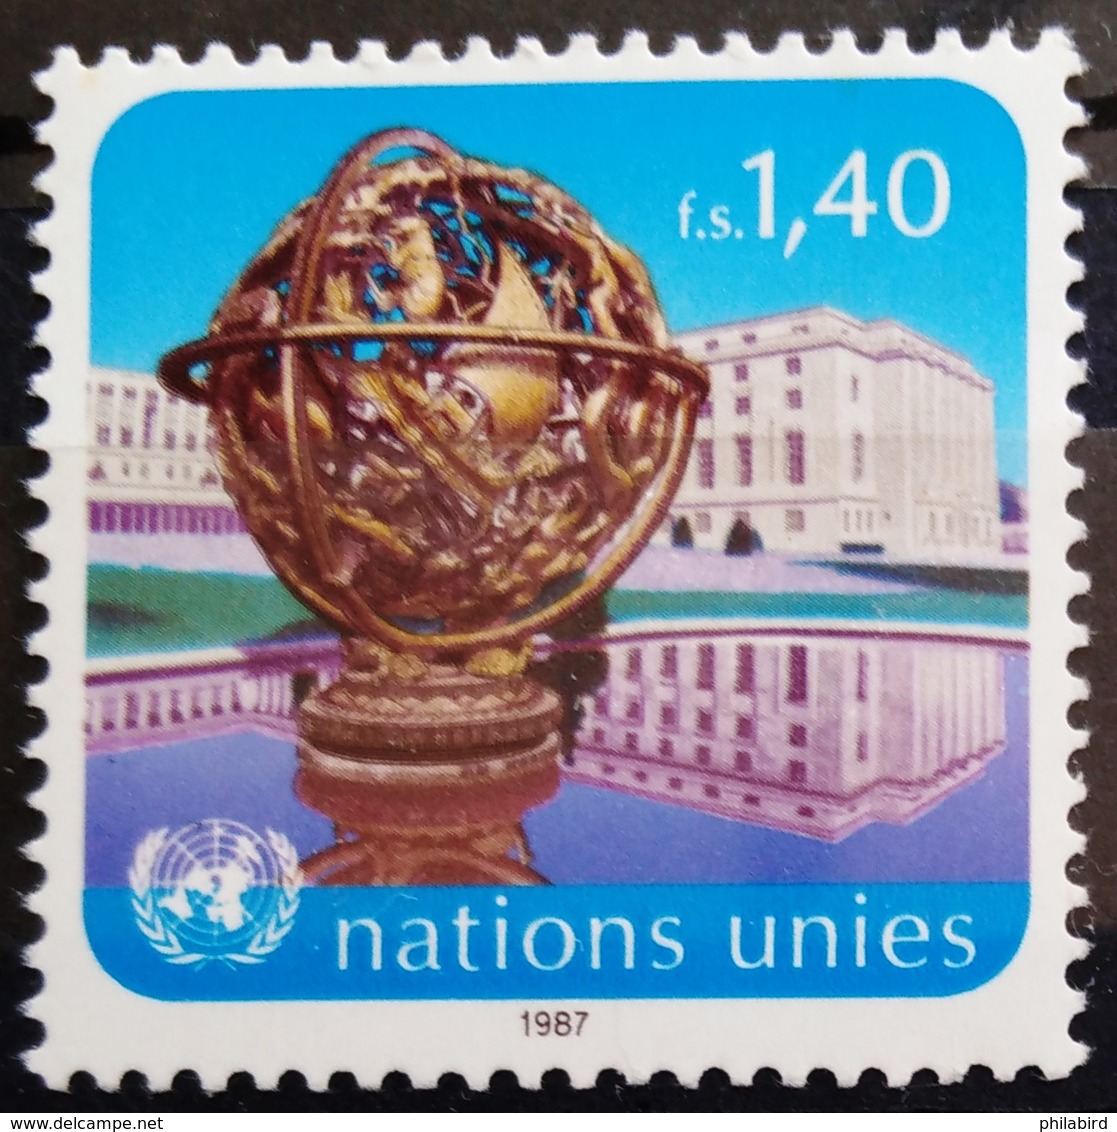 NATIONS-UNIS  GENEVE                  N° 153                      NEUF** - Unused Stamps